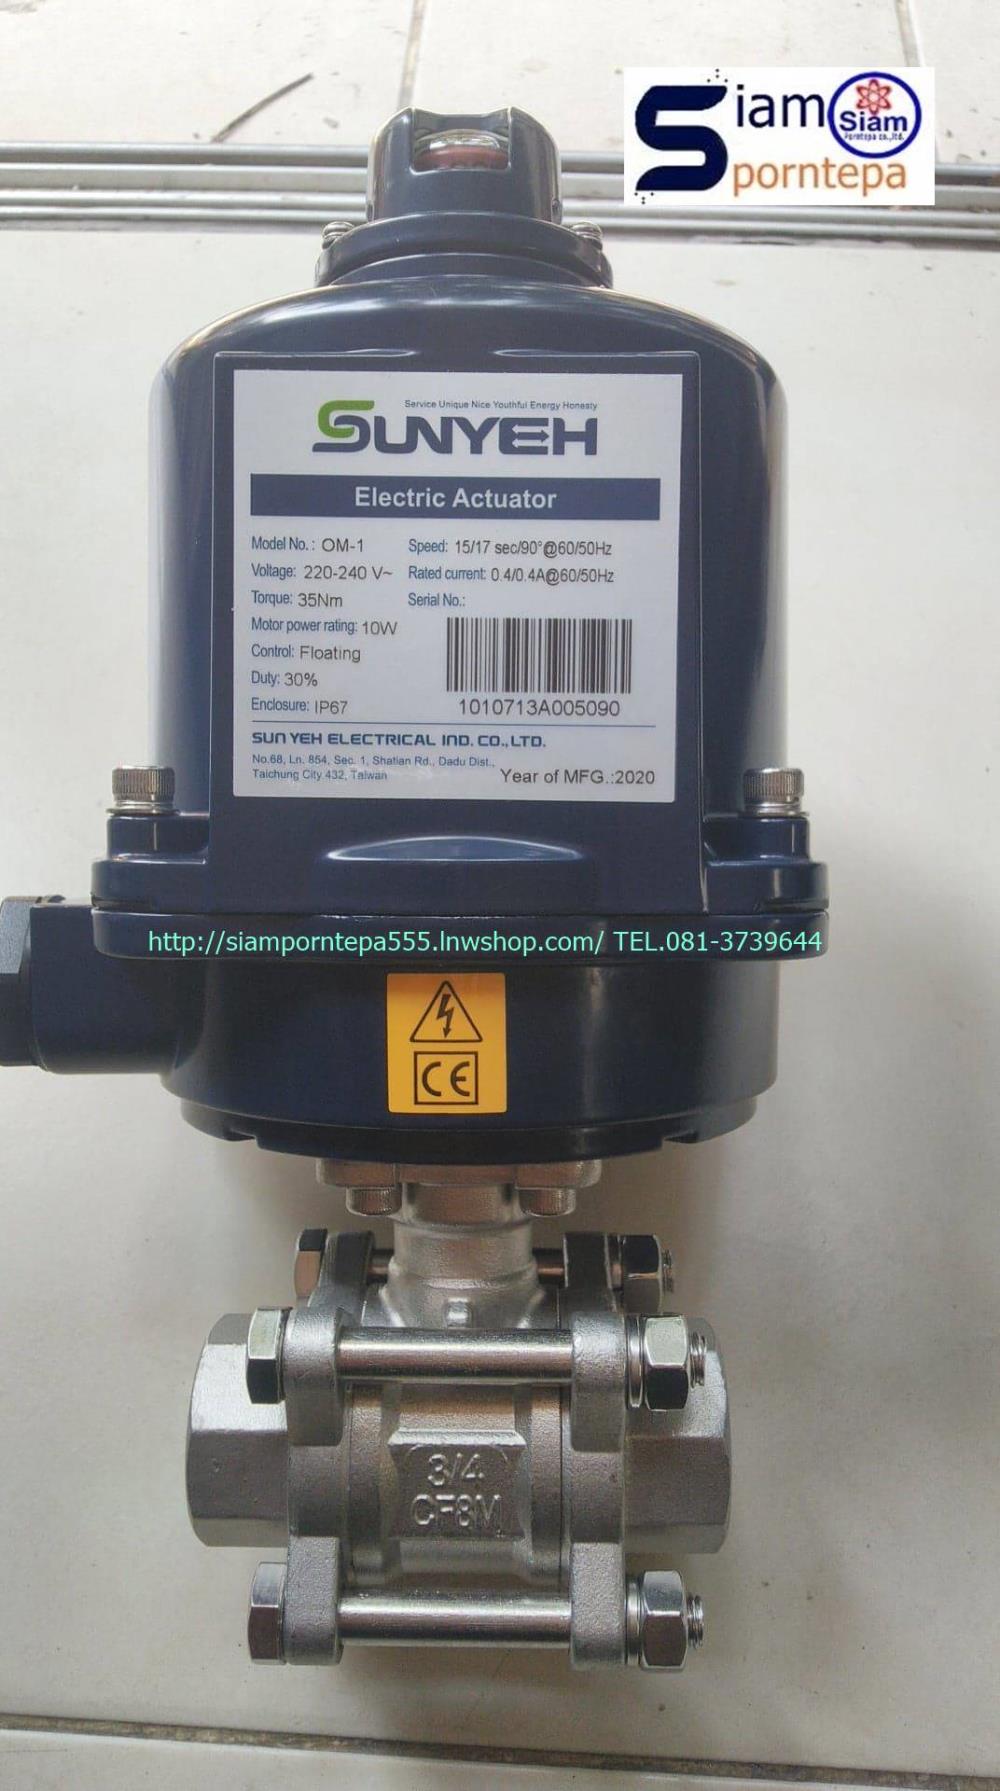 OM1-24DC+Ball valve size 2" Sunyeh Electric actuator หัวขับไฟฟ้า 24DC กับ บอลวาล์ว สแตนเลส ขนาด 2" ทนทาน ราคาถูก ส่งฟรีทั่วประเทศ,OM1-24DC+Ball valve size 2" Sunyeh Electric actuator หัวขับไฟฟ้า 24DC กับ บอลวาล์ว สแตนเลส ขนาด 2",Sunyeh Electric actuator หัวขับไฟฟ้า 24DC กับ บอลวาล์ว สแตนเลส ขนาด 2",Sunyeh Electric Actuator,Machinery and Process Equipment/Actuators